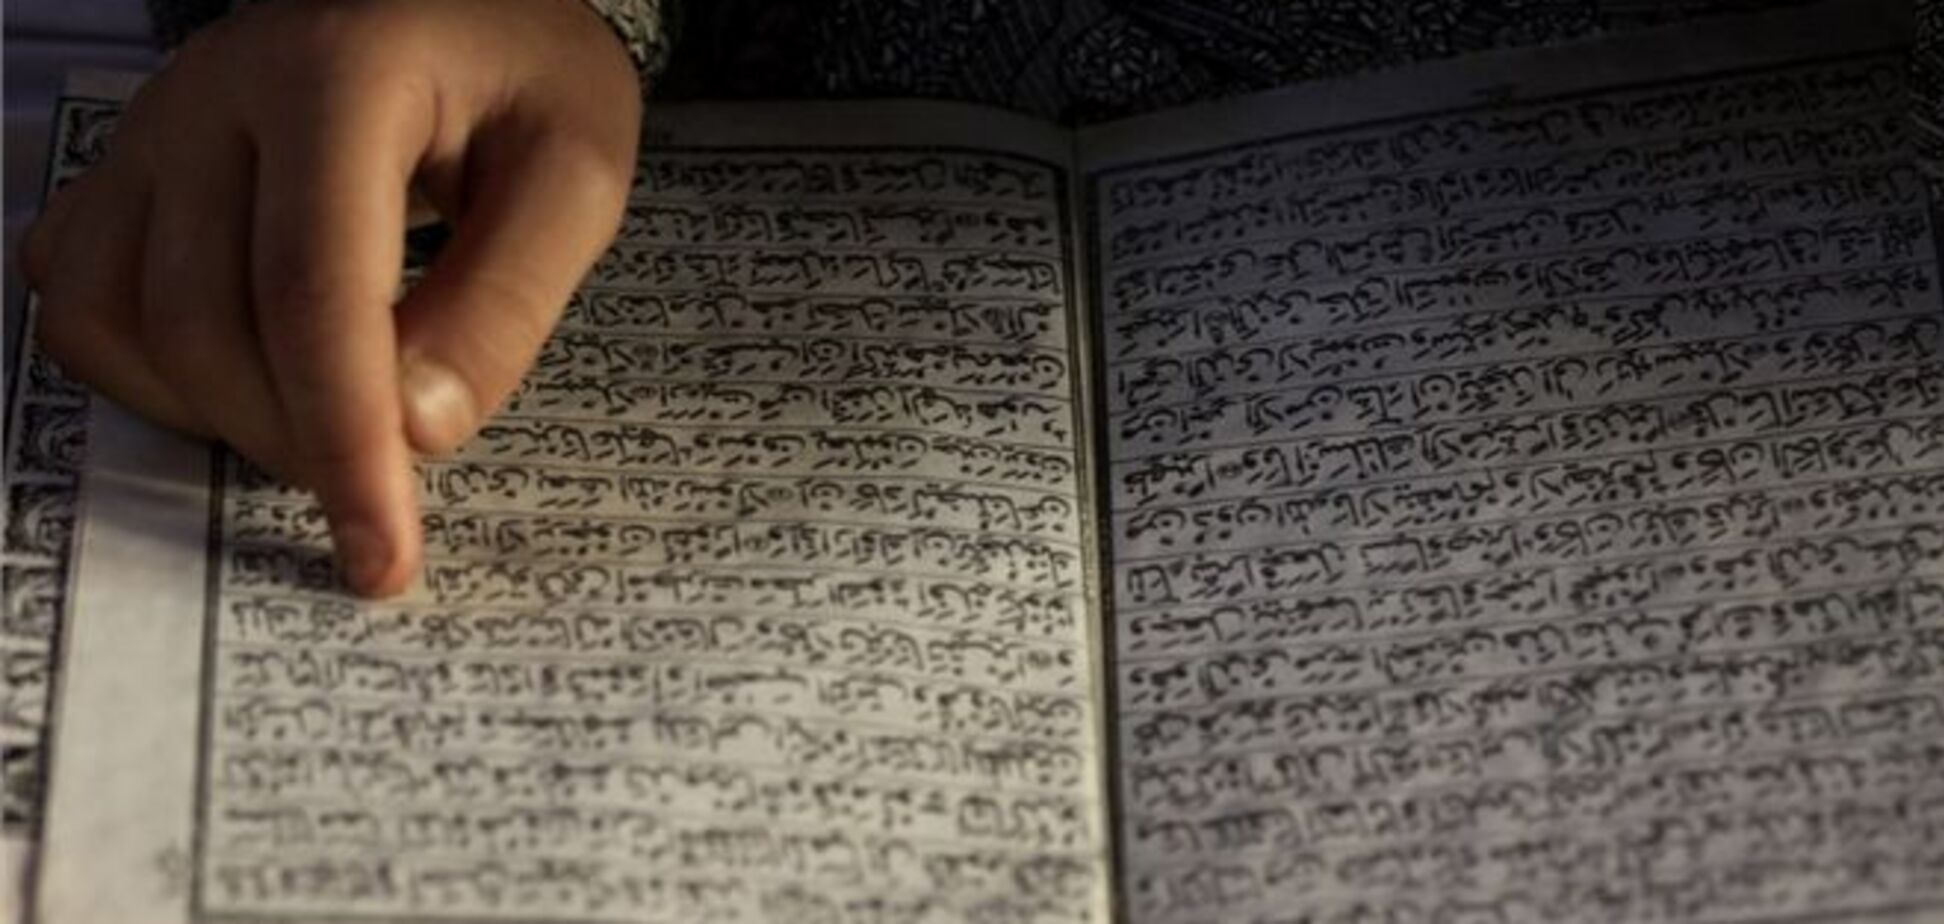 Девочка спаслась от изнасилования чтением Корана